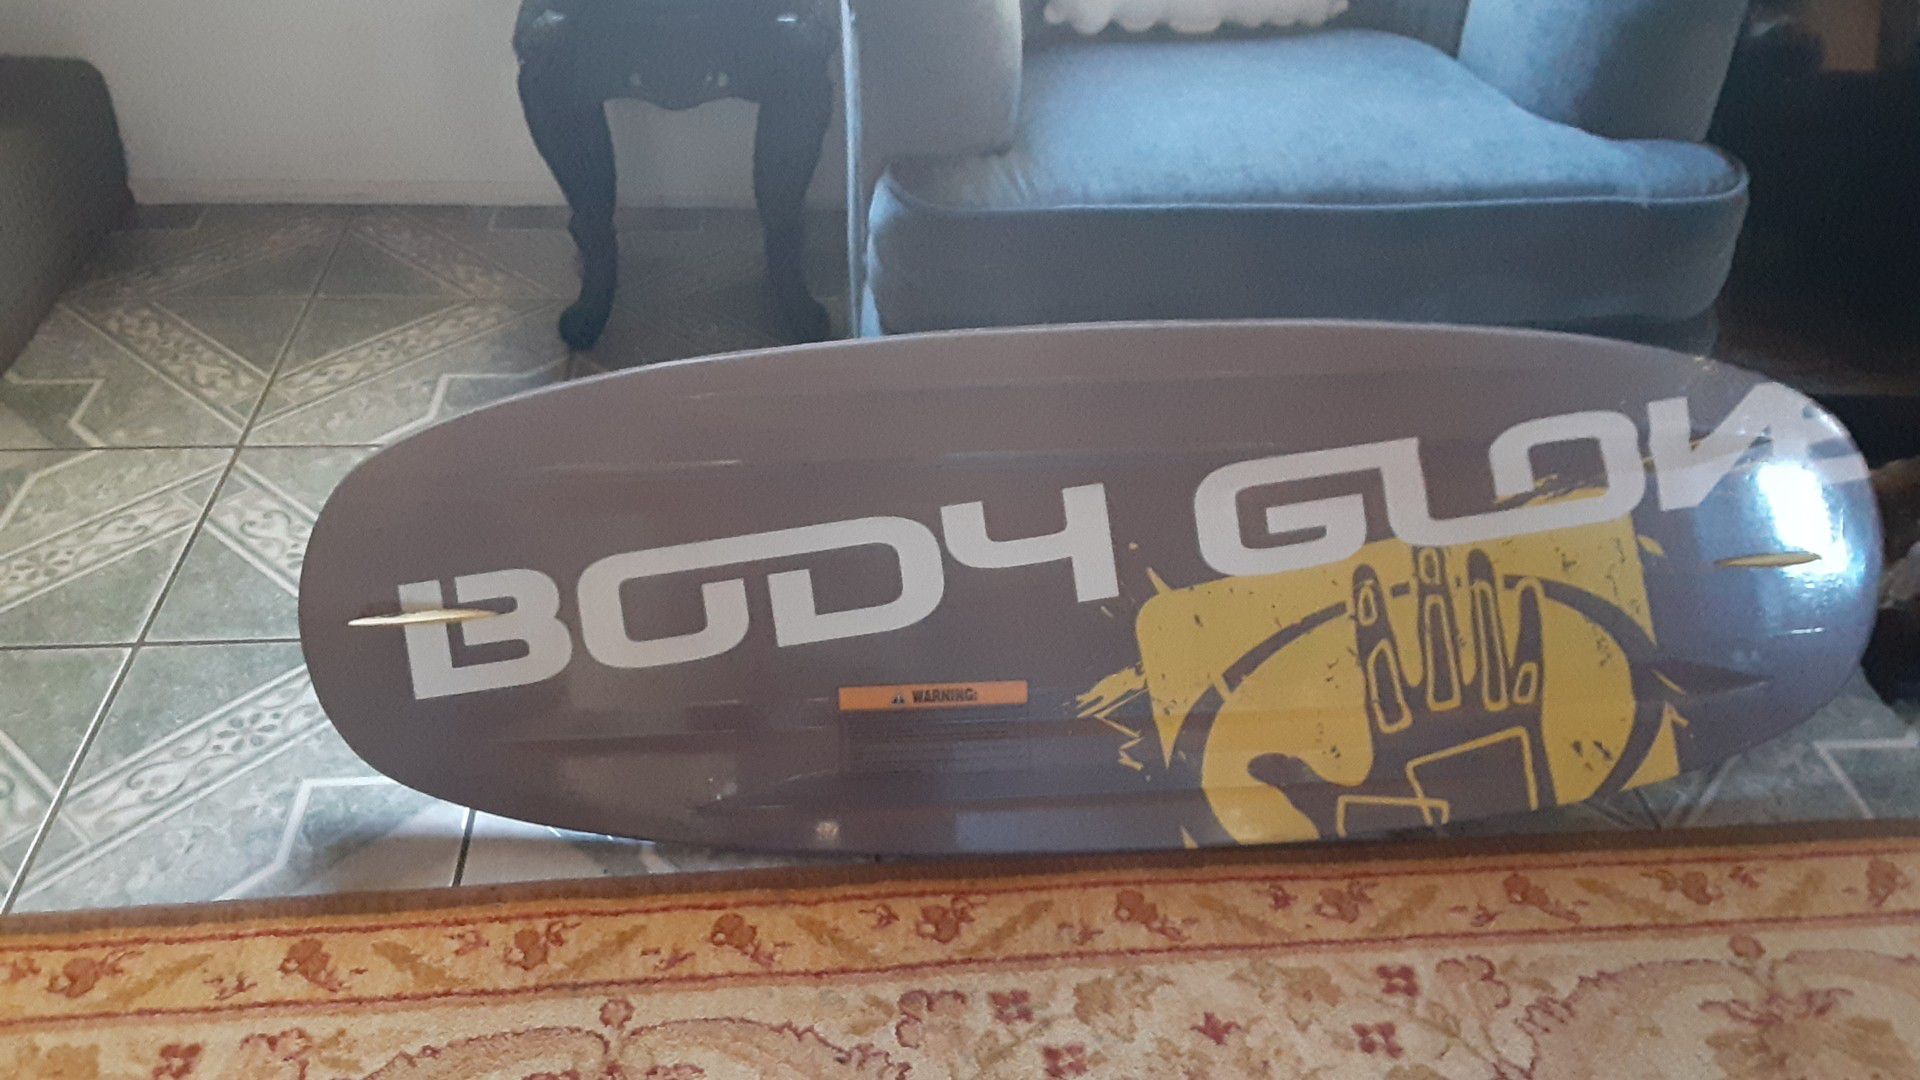 Body Glove wake board